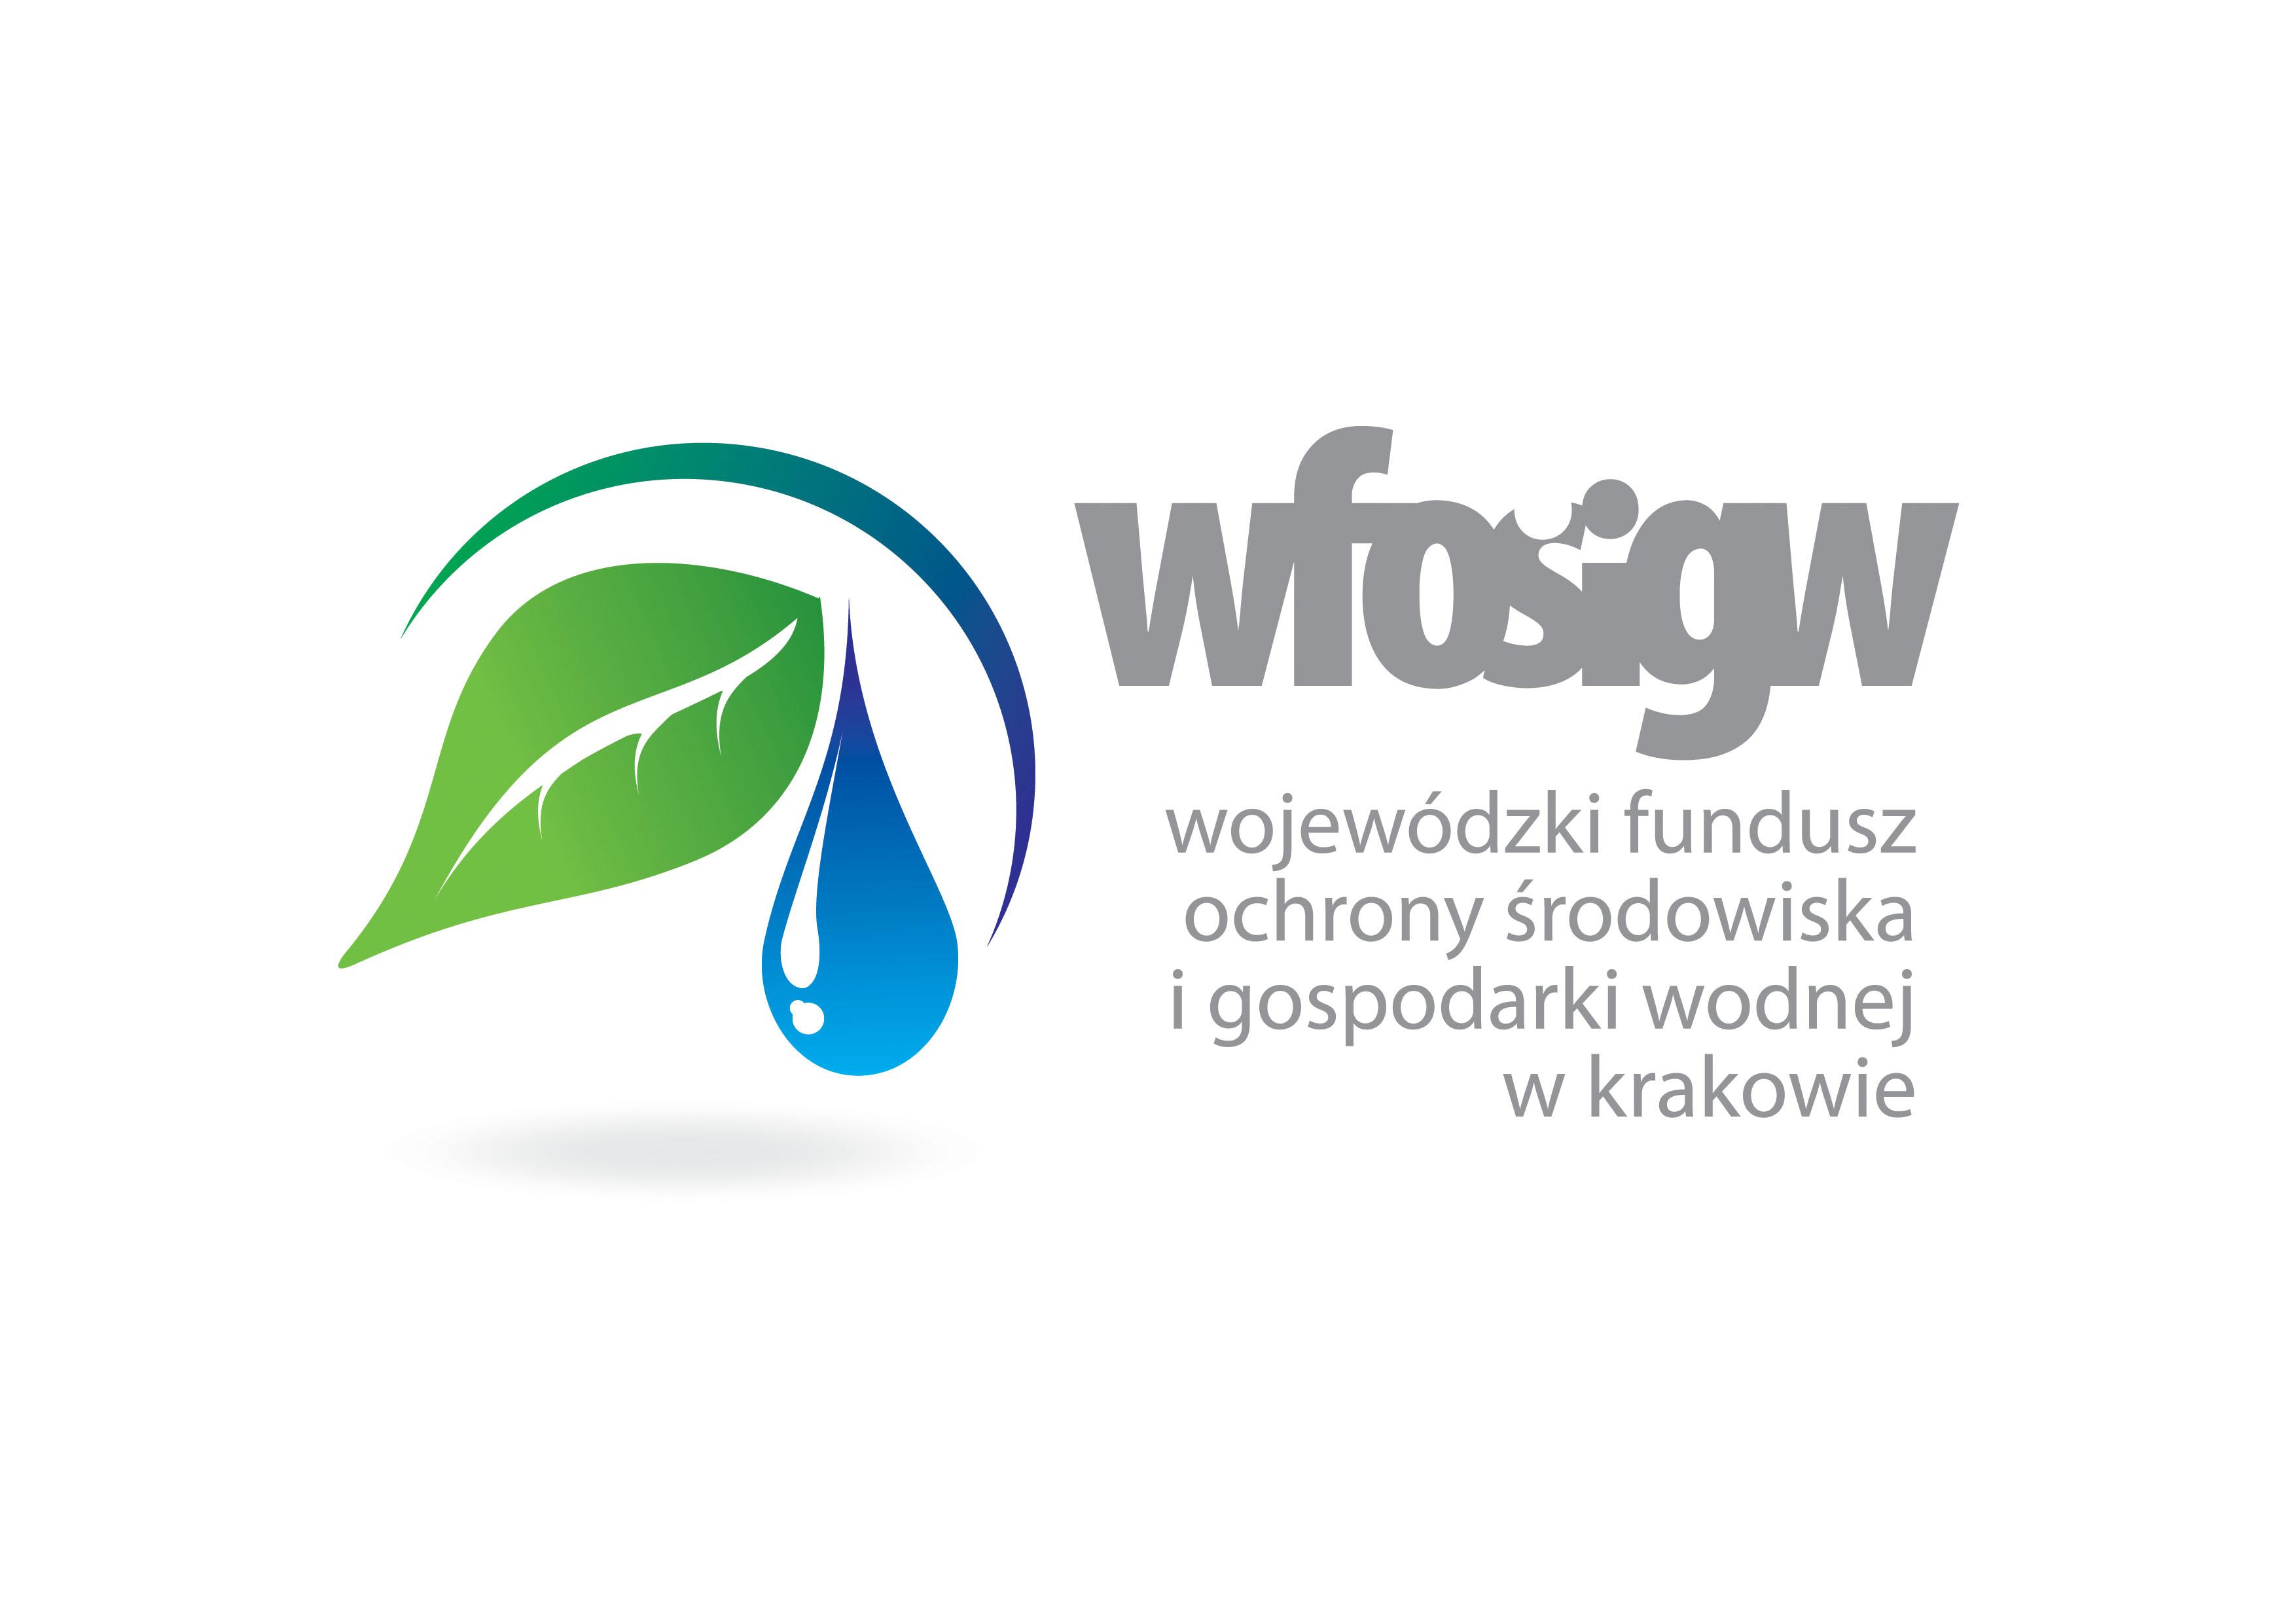 Ogłoszenie Wojewódzkiego Funduszu Ochrony Środowiska i Gospodarki Wodnej w Krakowie